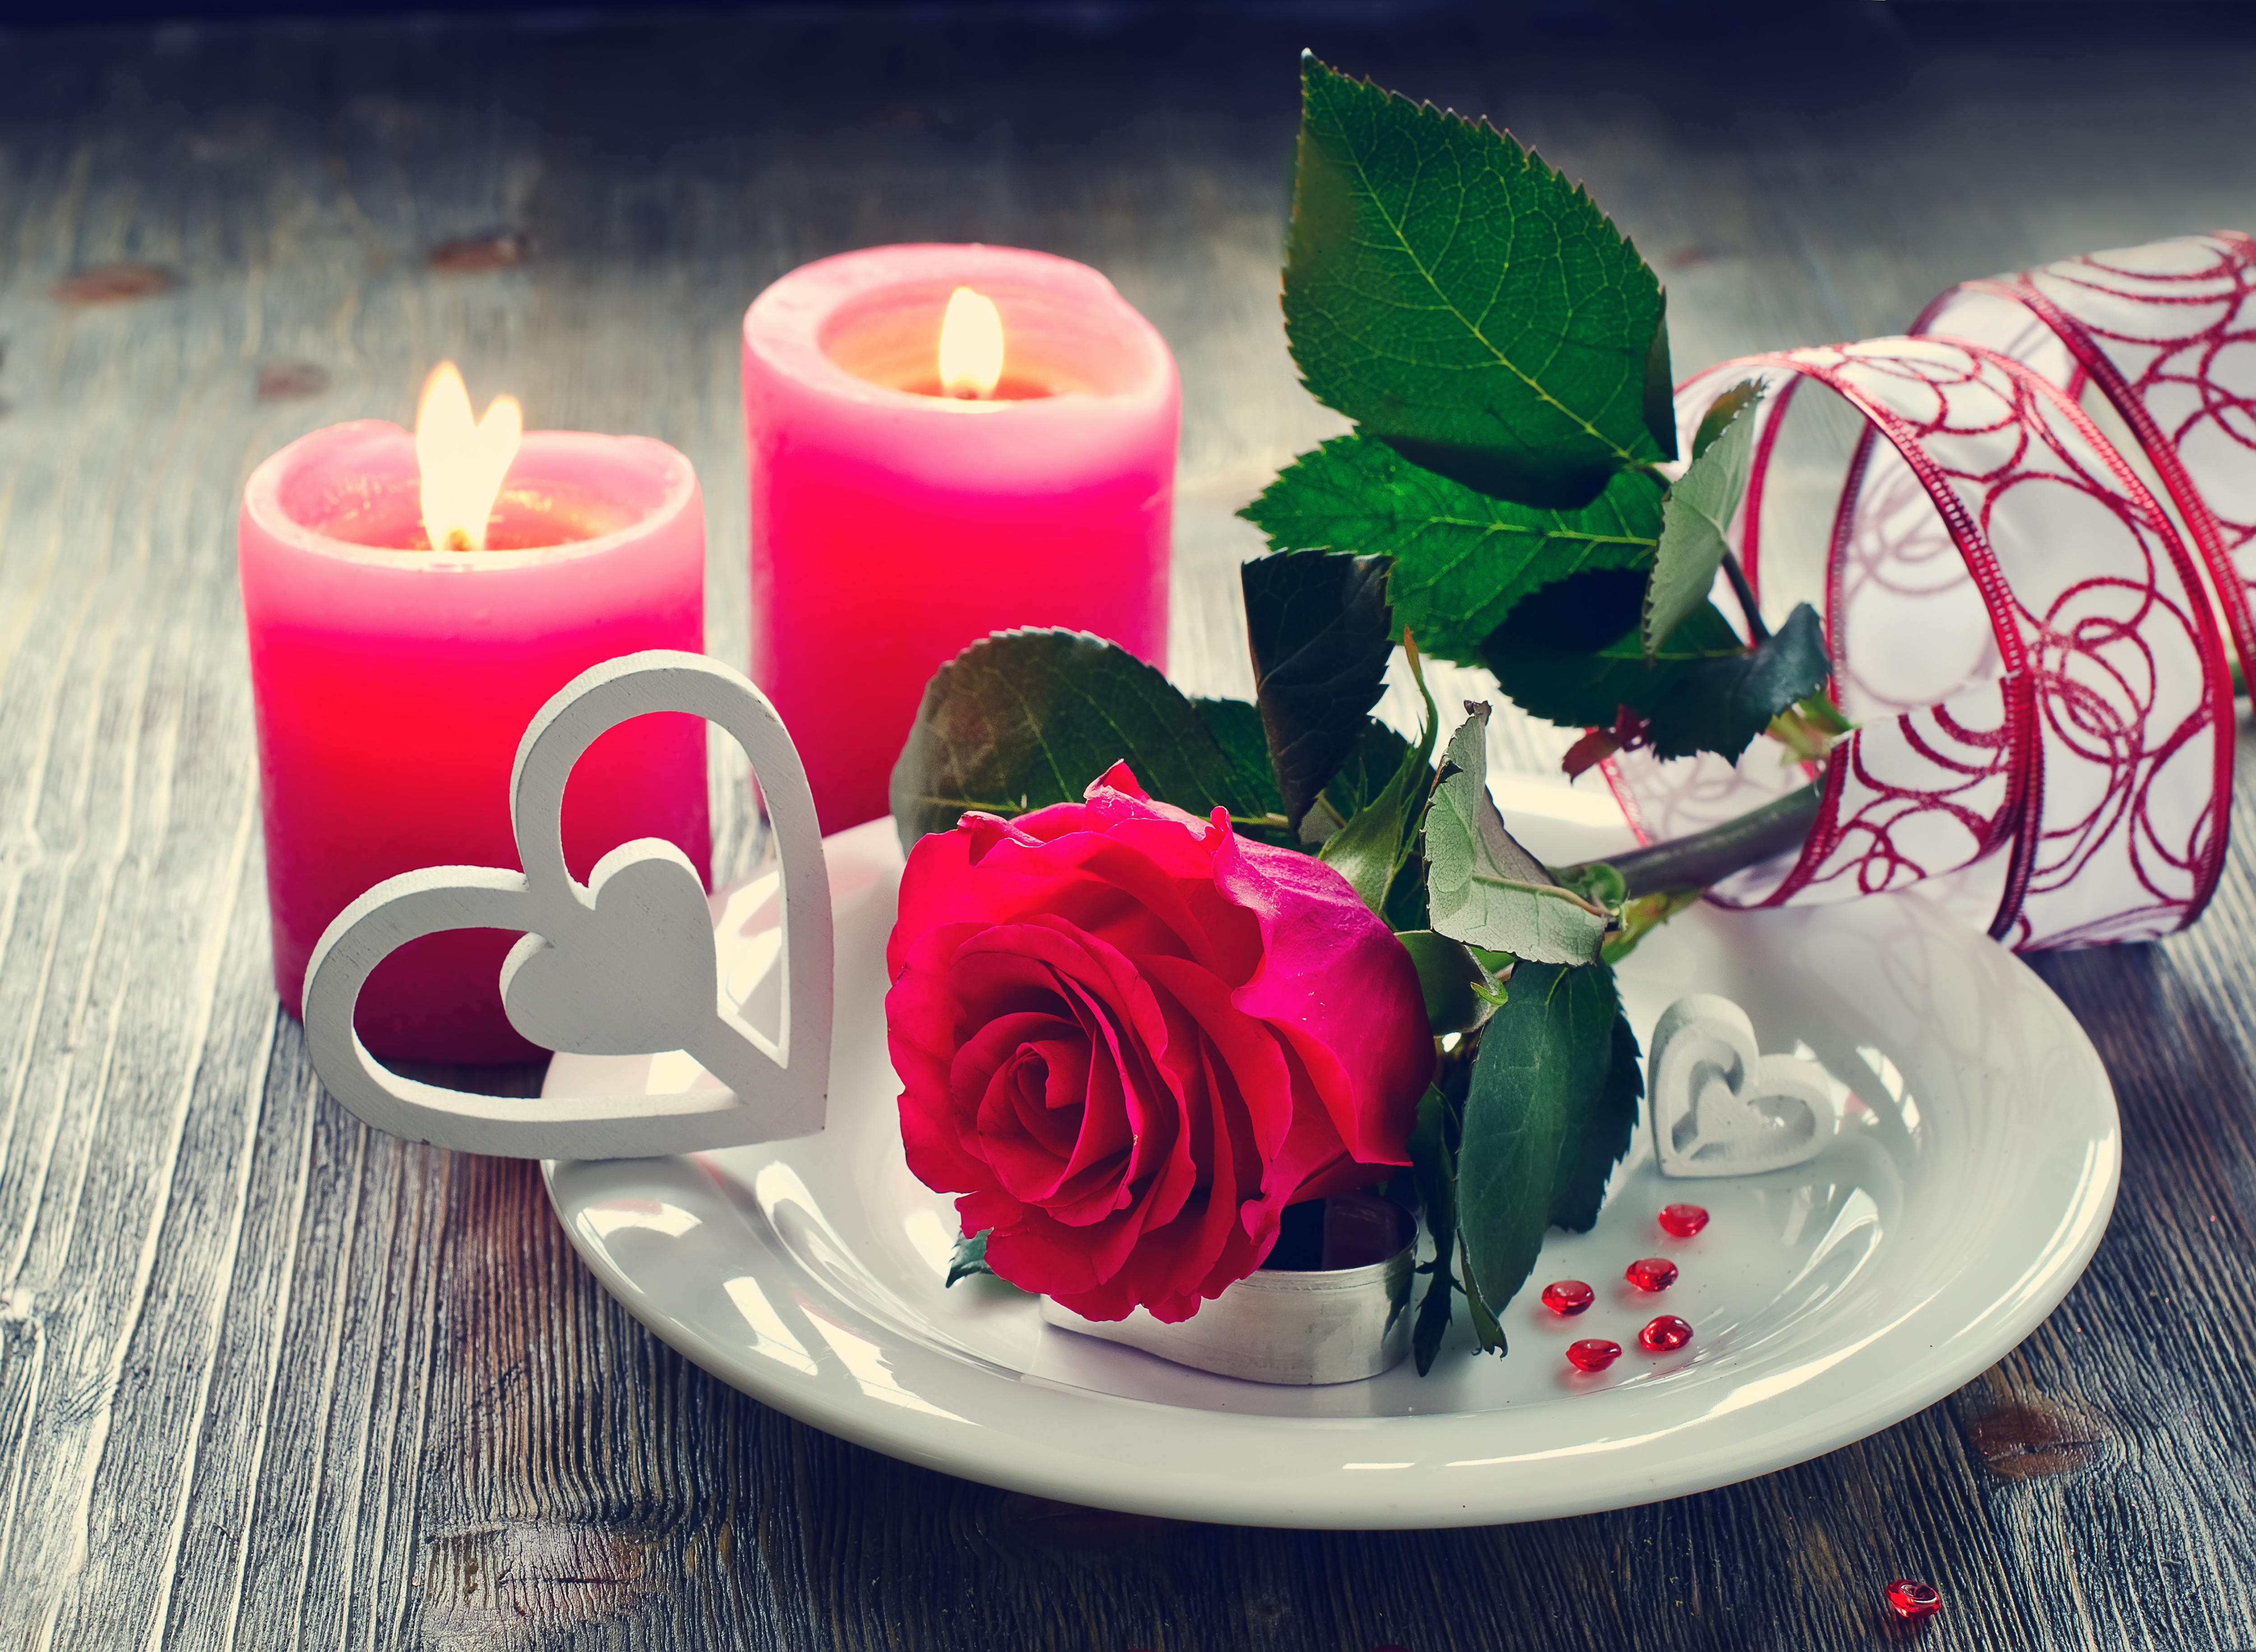 免费照片一朵红玫瑰插在盘子里，旁边是燃烧的蜡烛